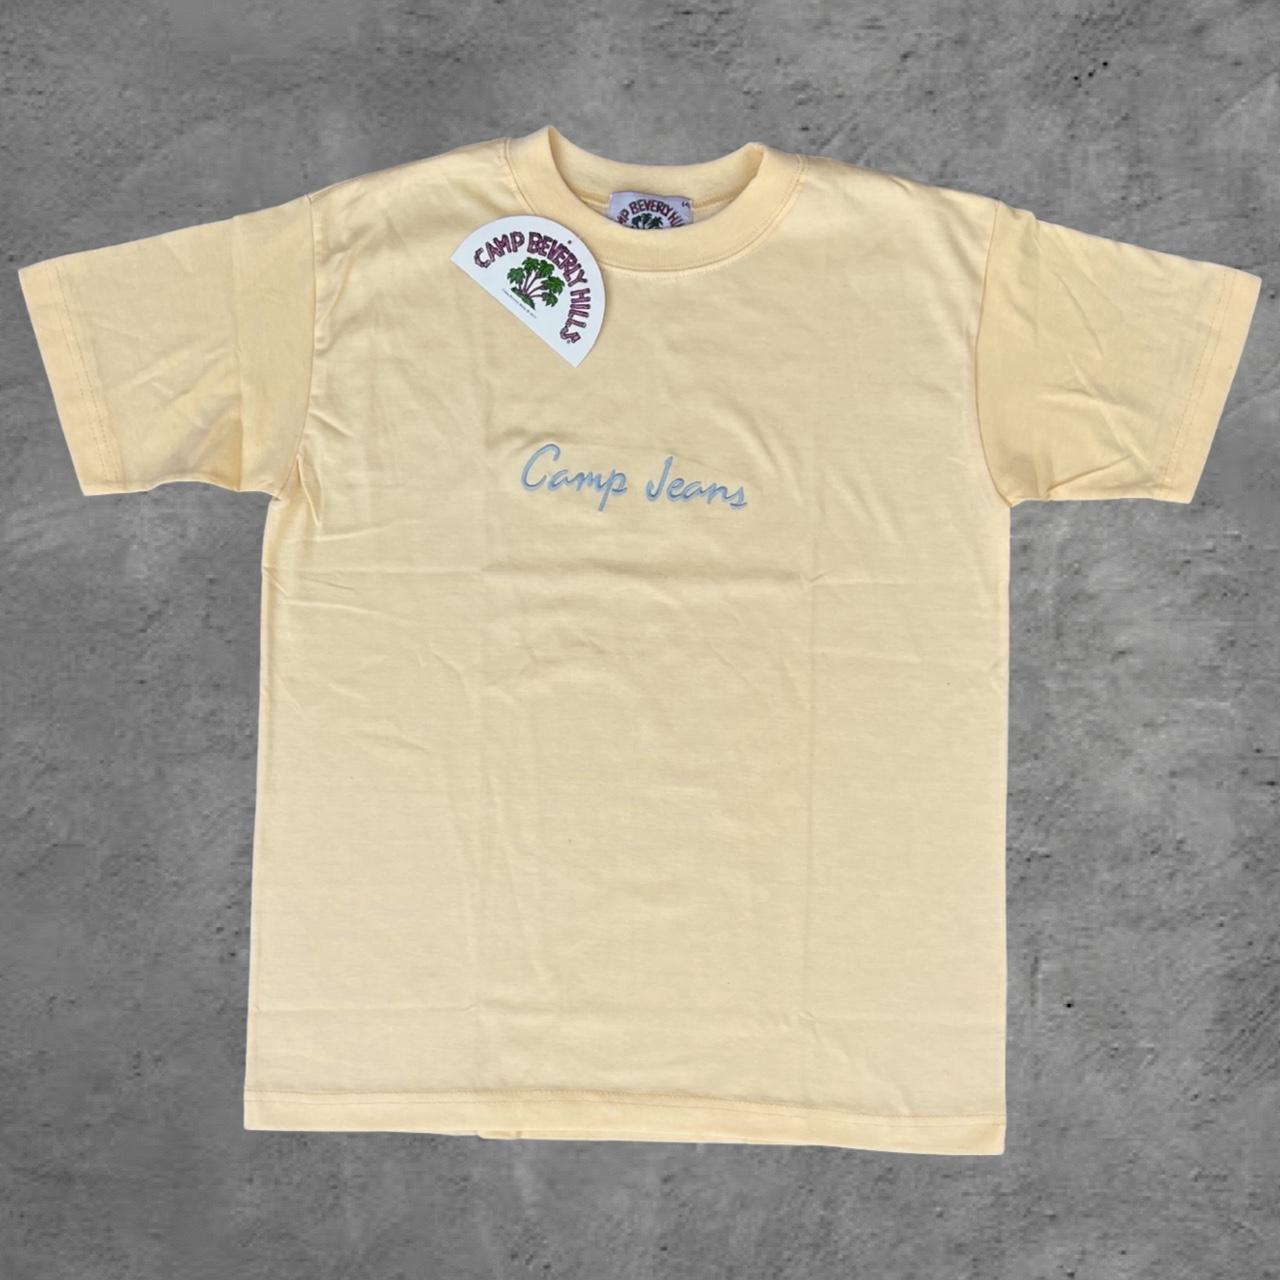 Vintage Camp Beverly Hills T-shirt 80’s Deadstock... - Depop